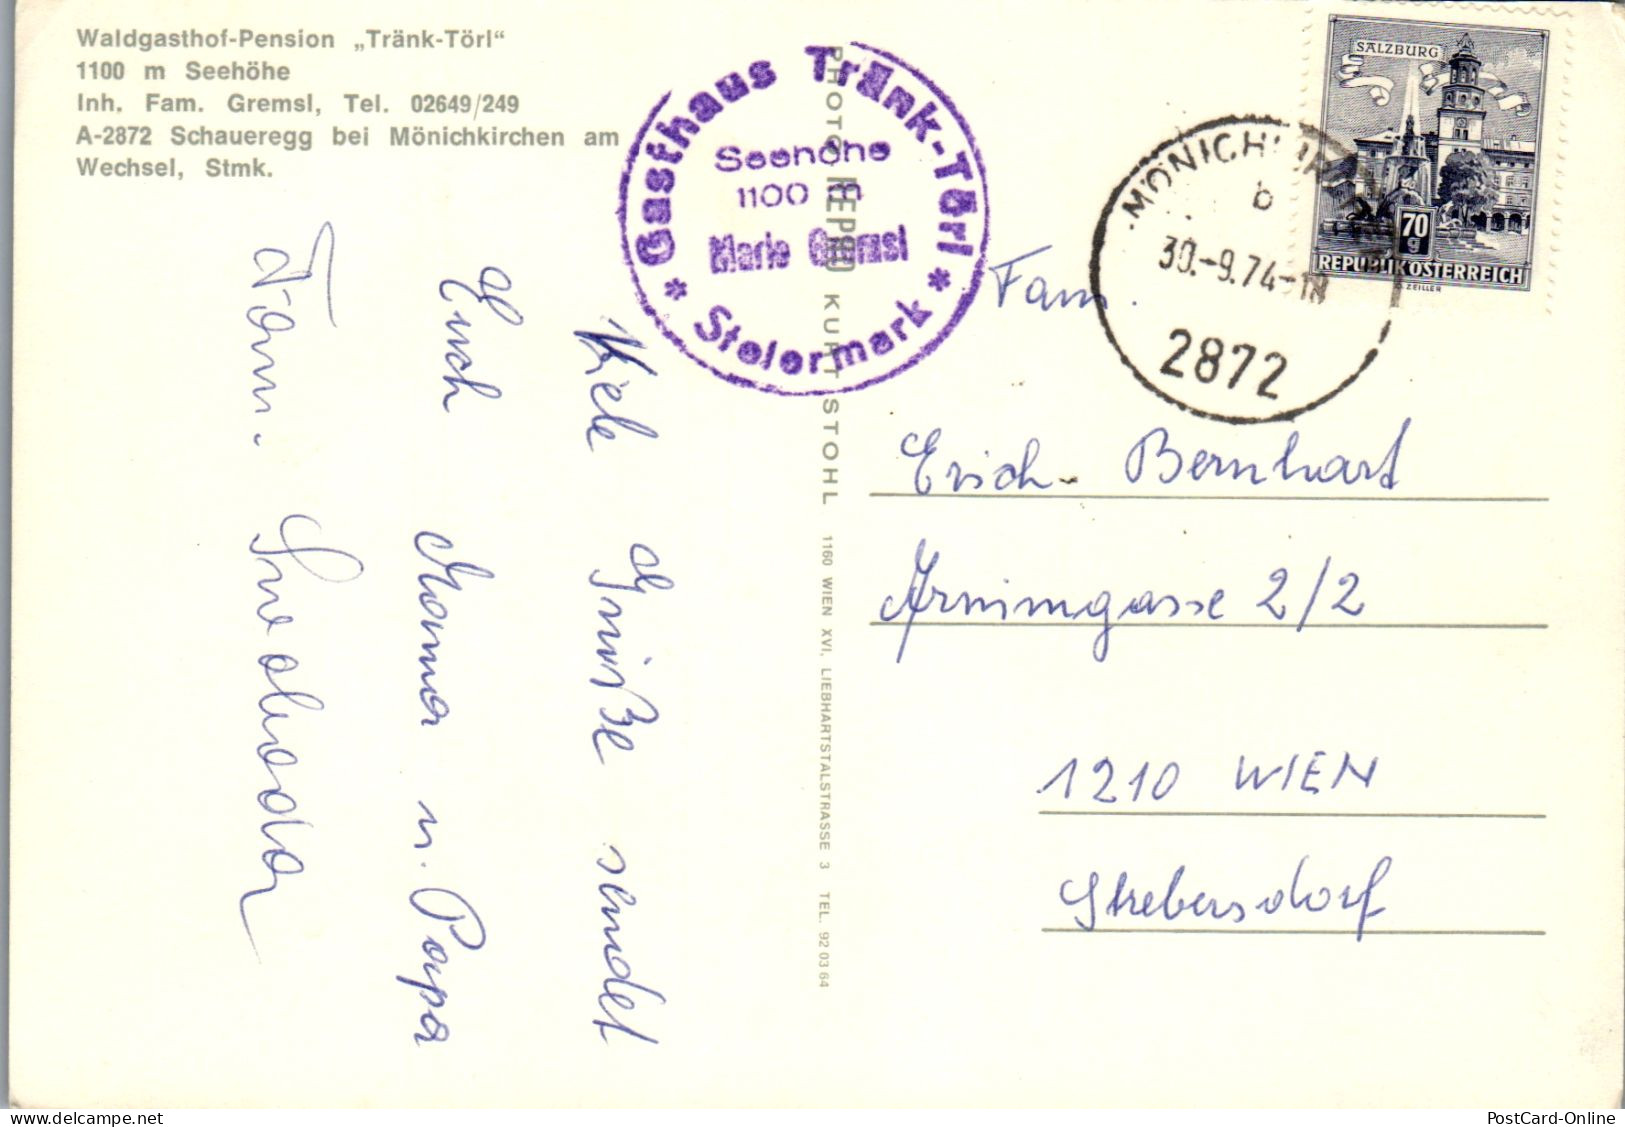 50217 - Steiermark - Schaueregg , Bei Mönichkirchen Am Wechsel , Gasthof Tränk-Törl , Tränktörl , Fam. Gremsl - 1974 - Friedberg